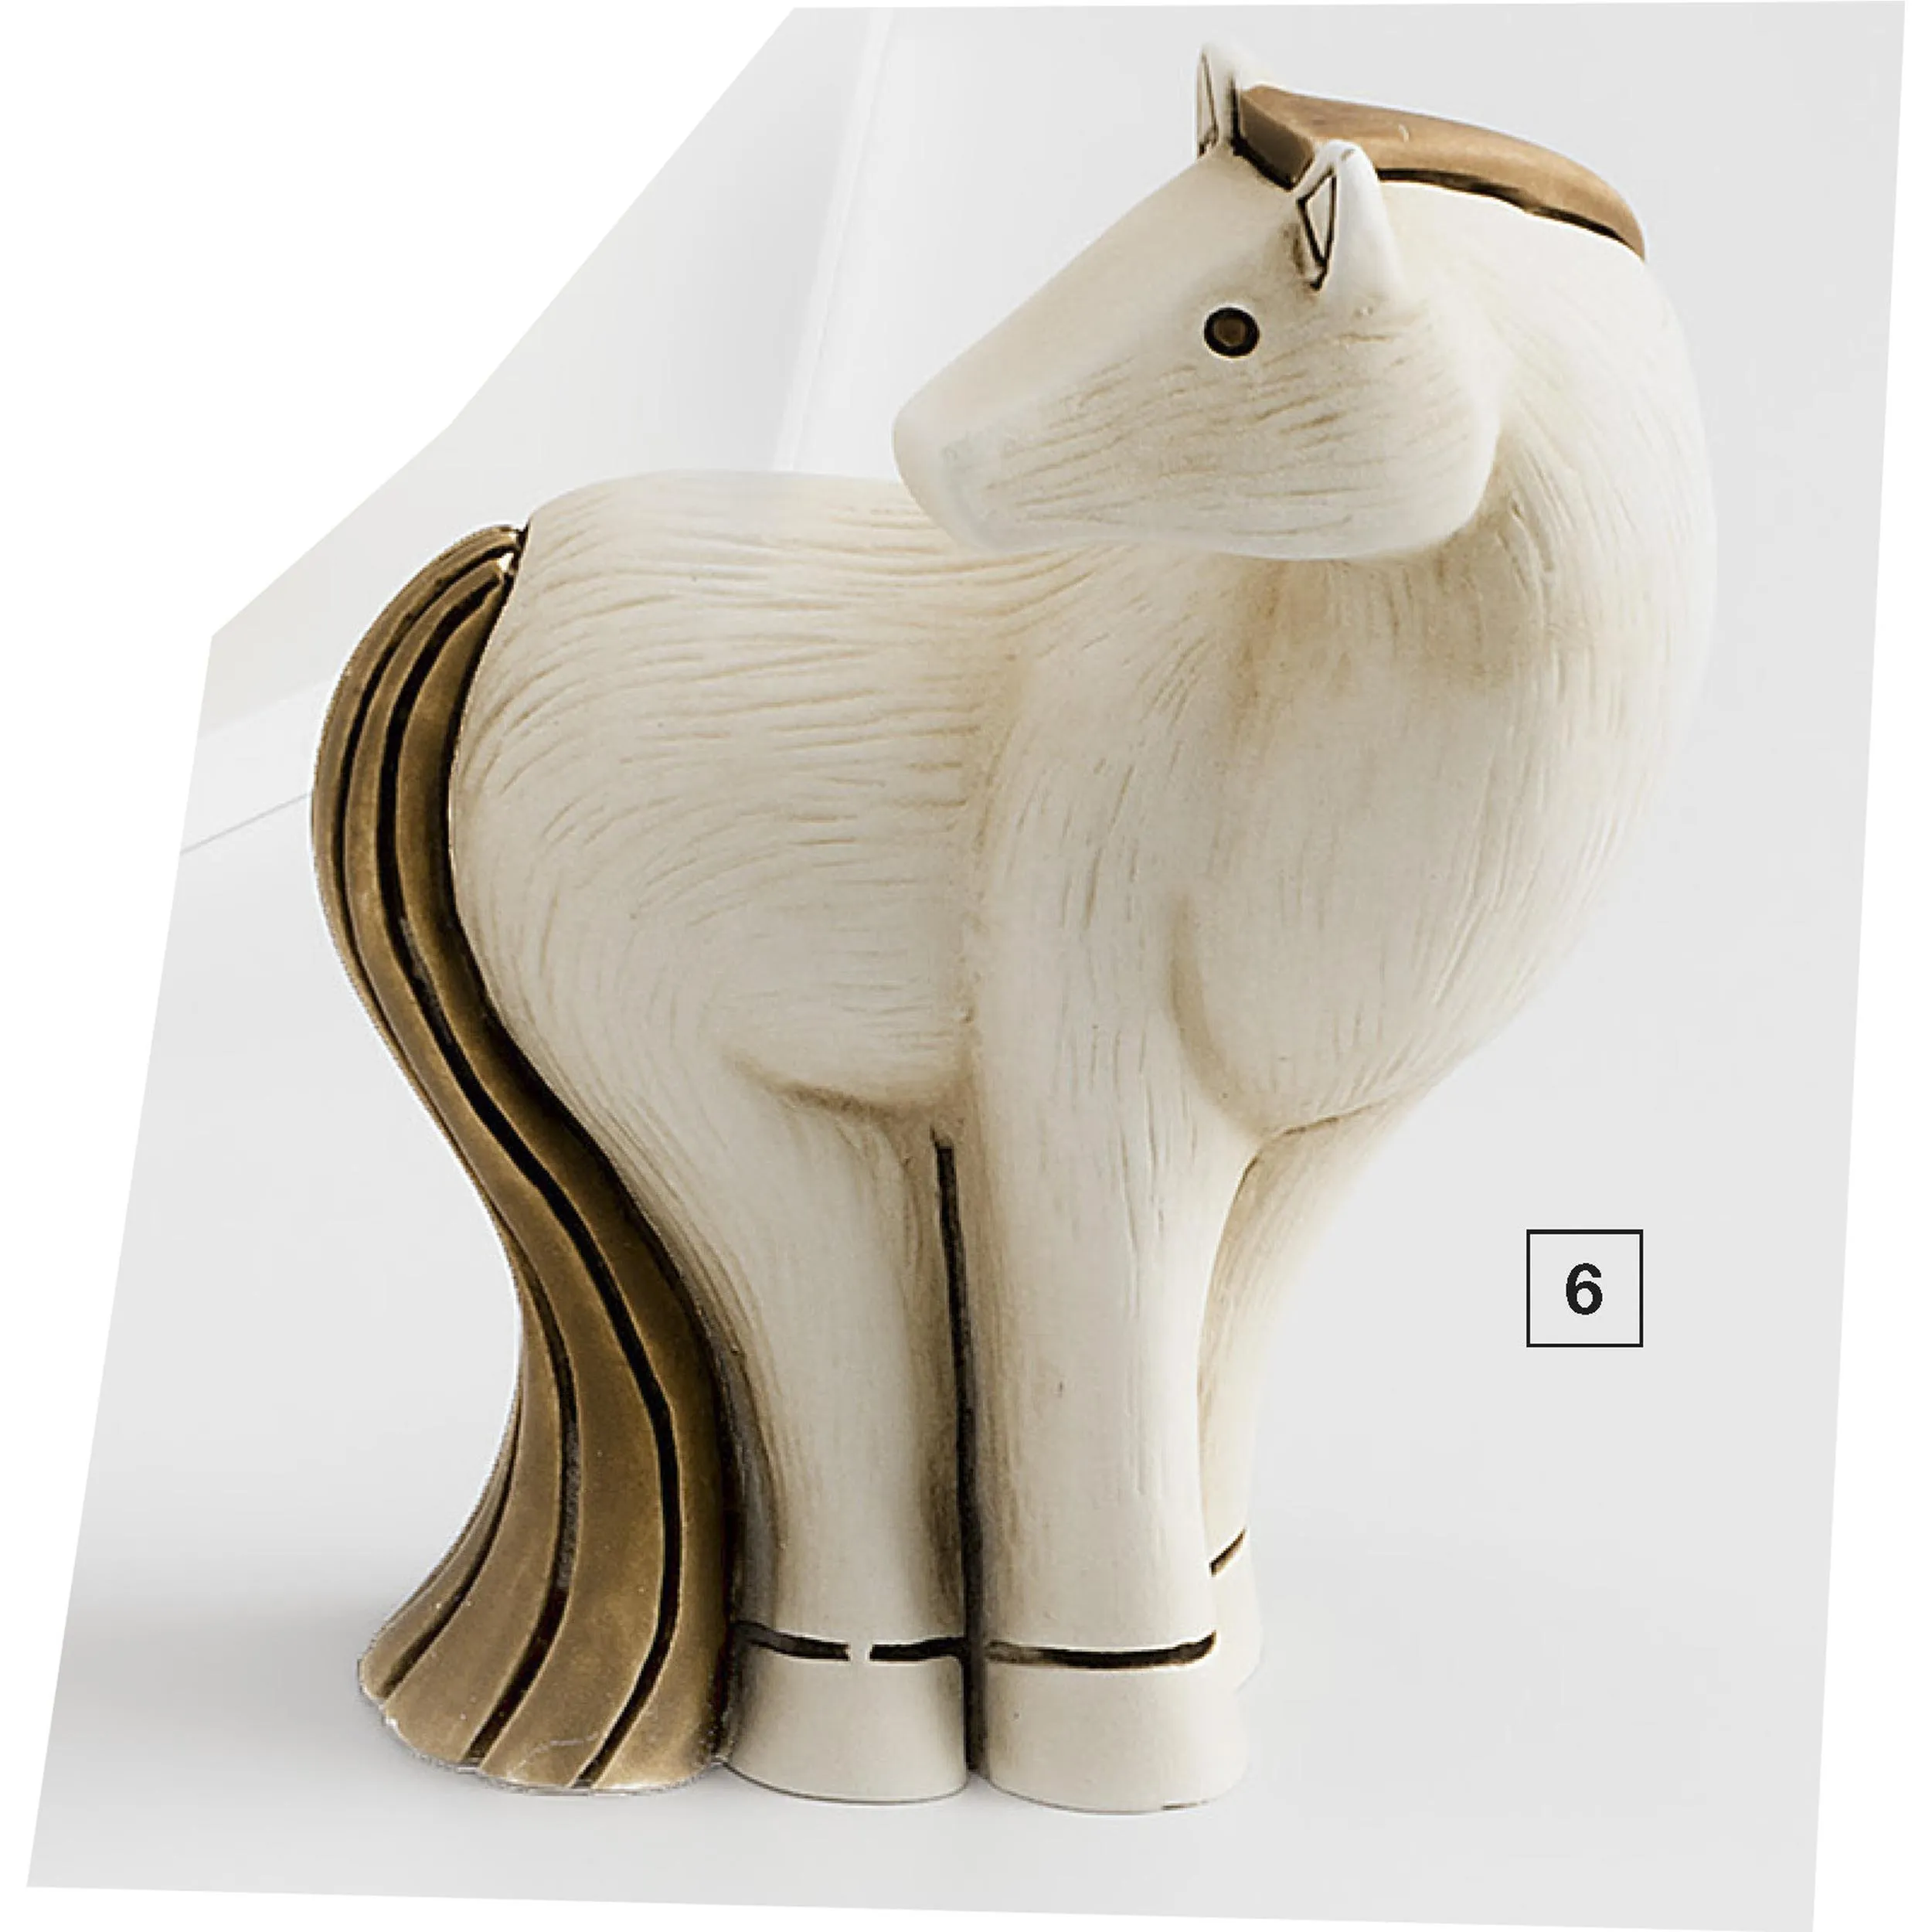 Cavallo in resina colorata h 10 cm per cresima e comunione in scatola regalo , bomboniera